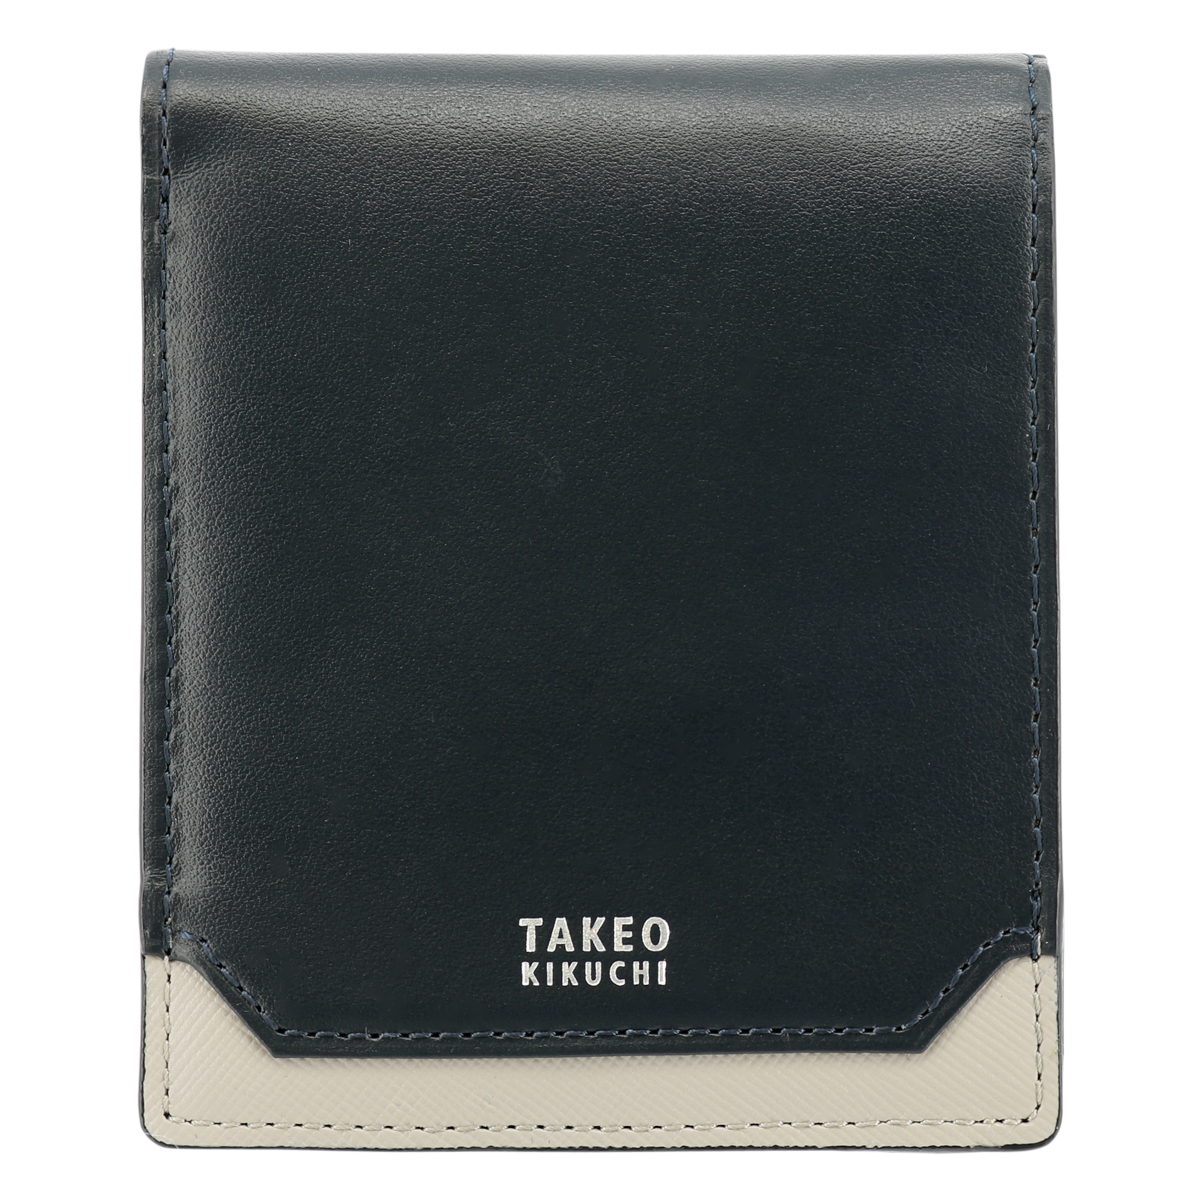 タケオキクチ 二つ折り財布 エレガンス メンズ 4130120 TAKEO KIKUCHI 